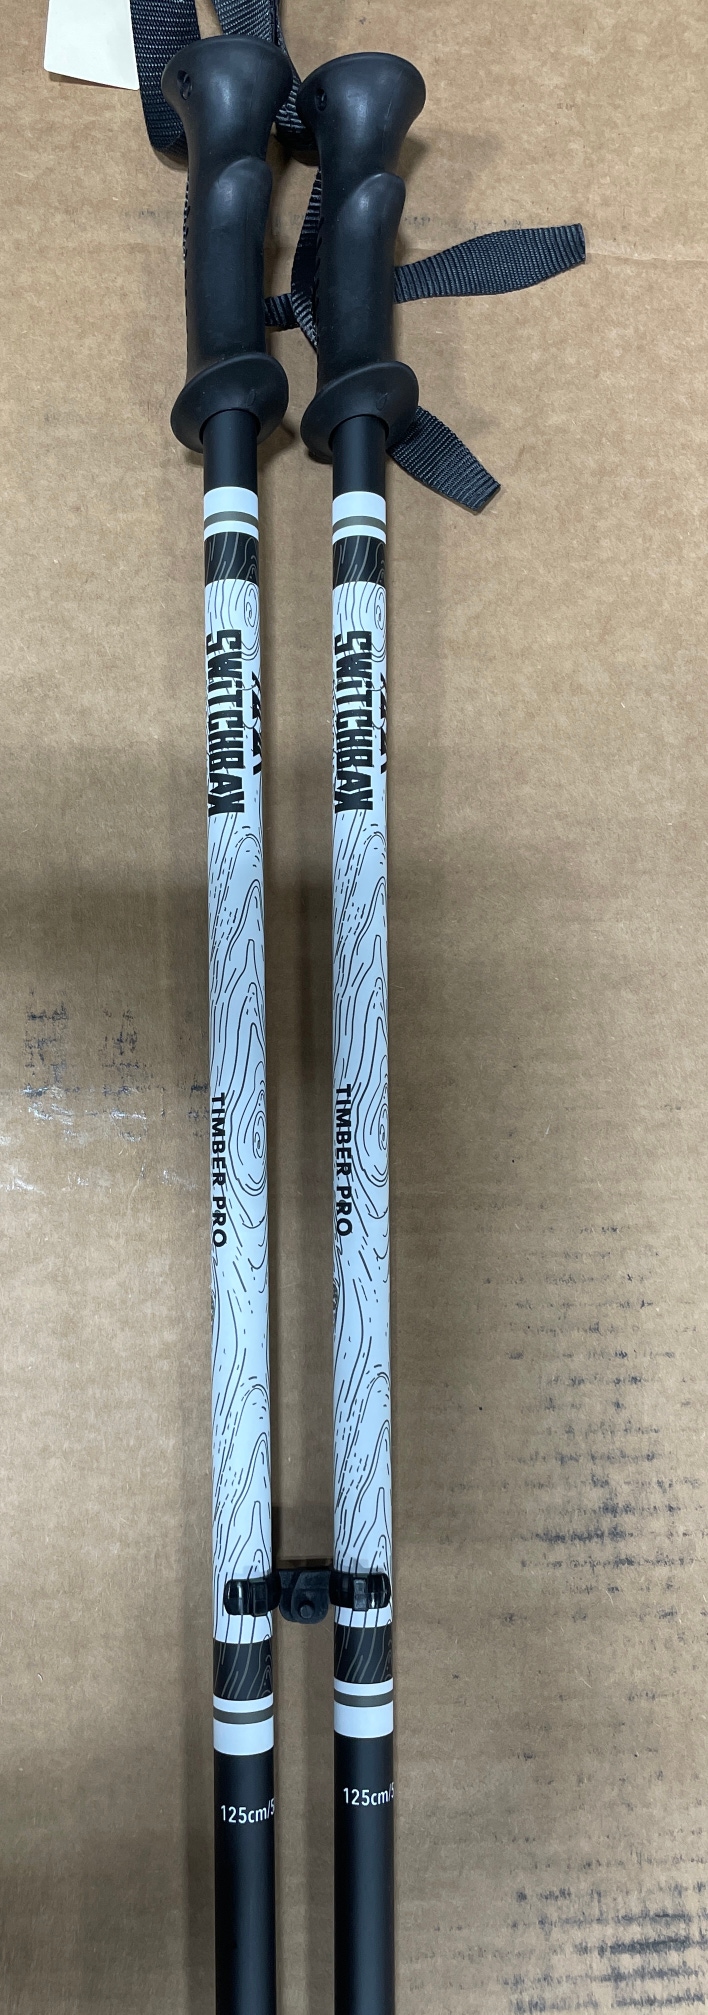 New Switchbak Timber Pro ski poles [ Size:  50in (125cm) ]